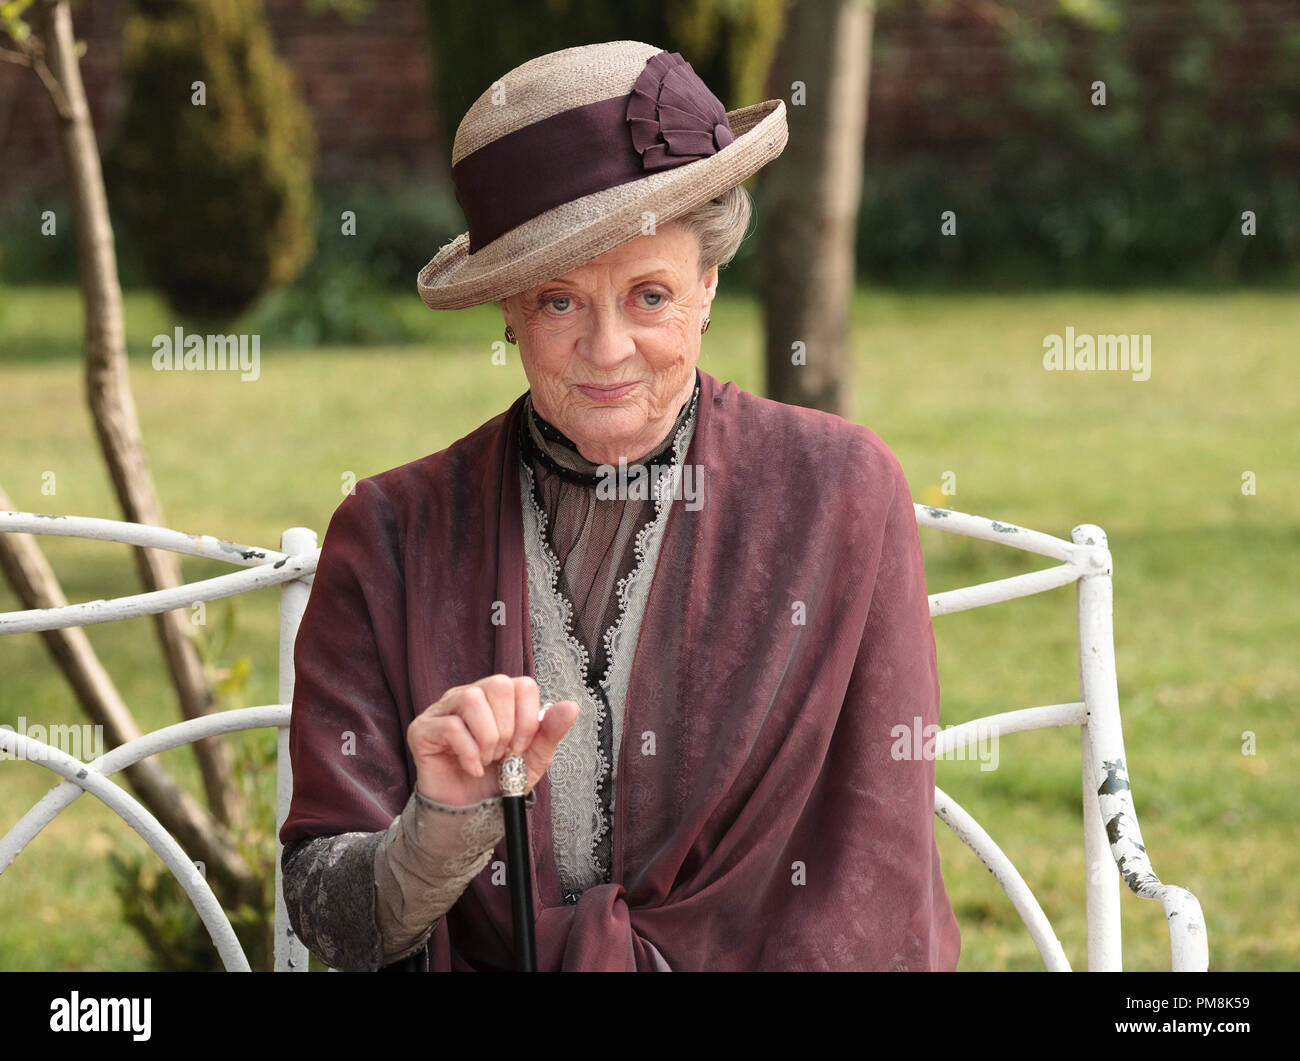 Cavendish Abbey stagione 2 - Episodio 3 illustrato: Dame Maggie Smith come Dowager Contessa Foto Stock